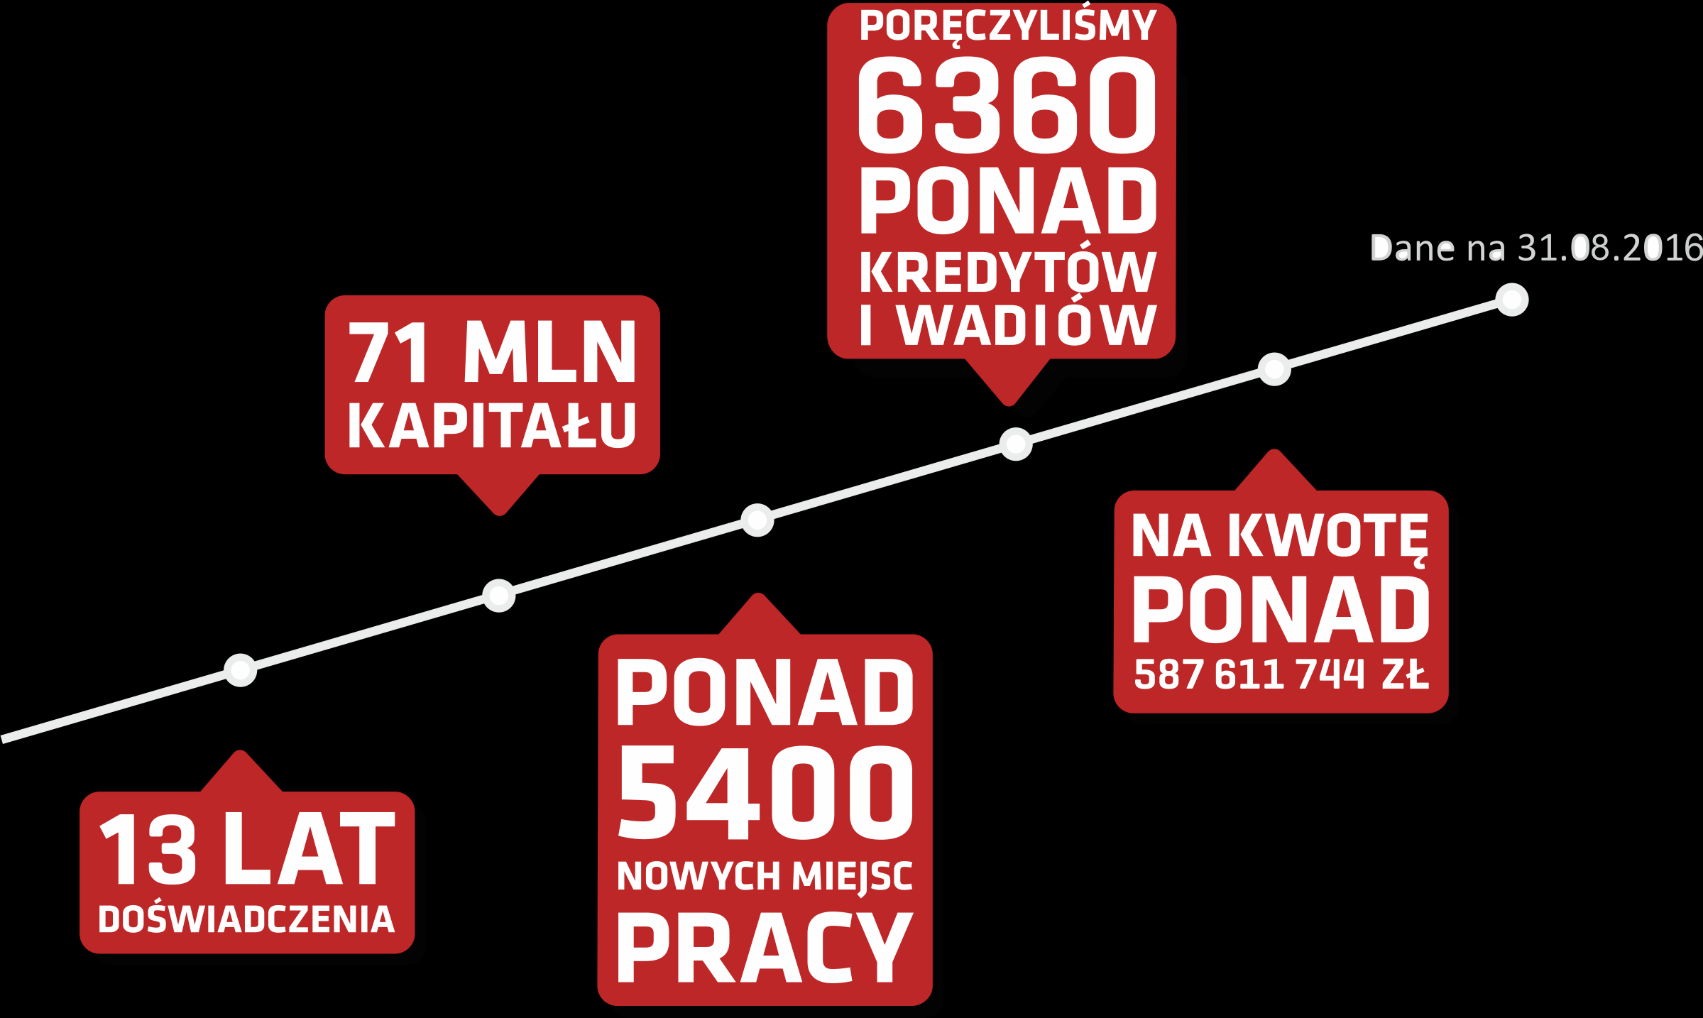 Kujawsko-Pomorski Fundusz Poręczeń Kredytowych działa od 2002 r., a jego kapitał poręczeniowy wynosi ponad 71 mln zł.